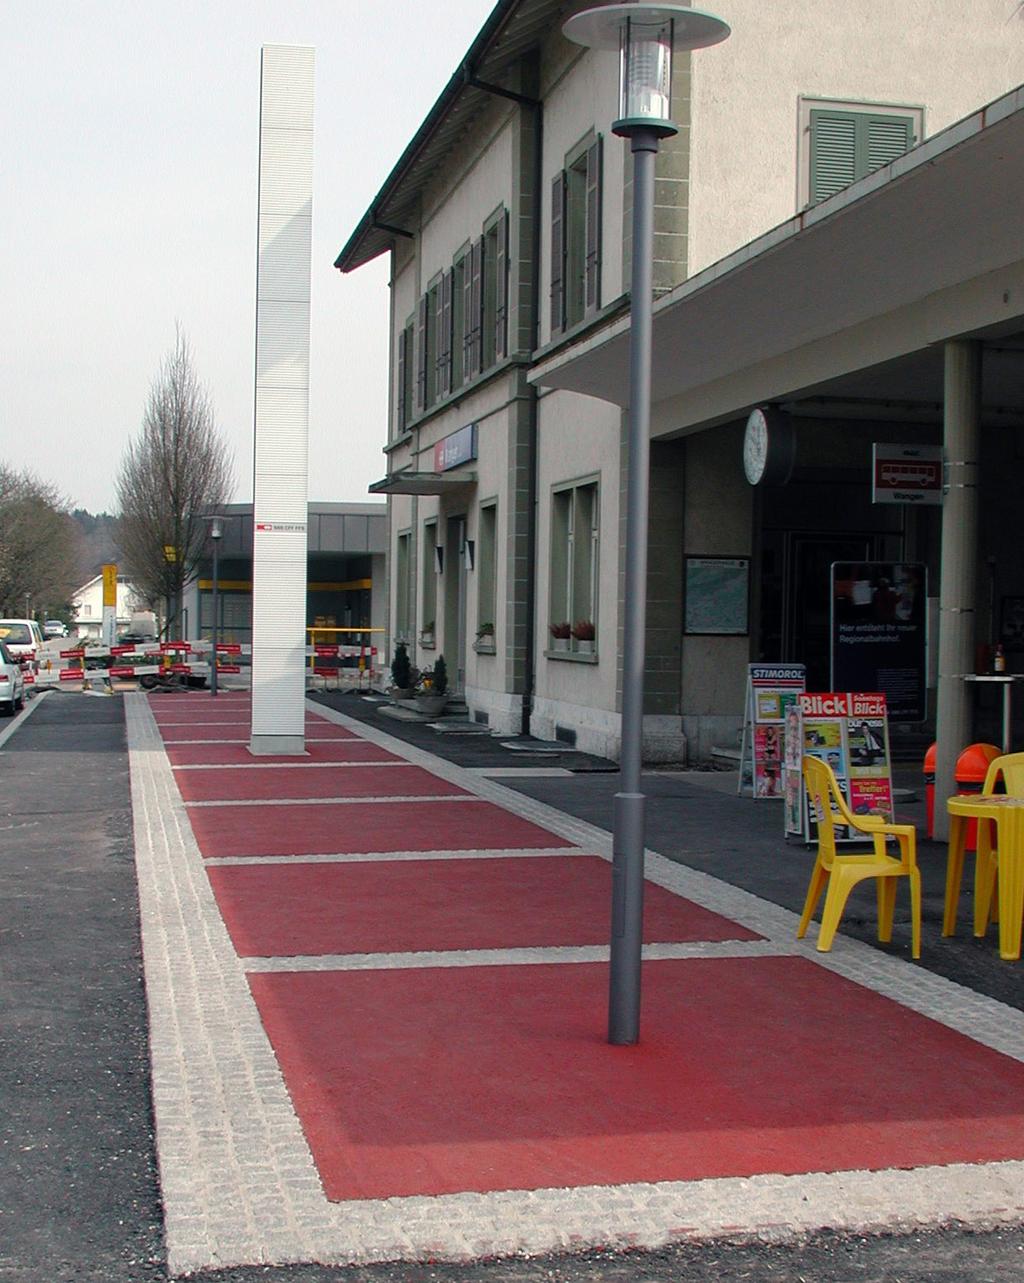 Quadraten aus rotem Belag lassen den Bahnhofvorplatz moderner und frischer